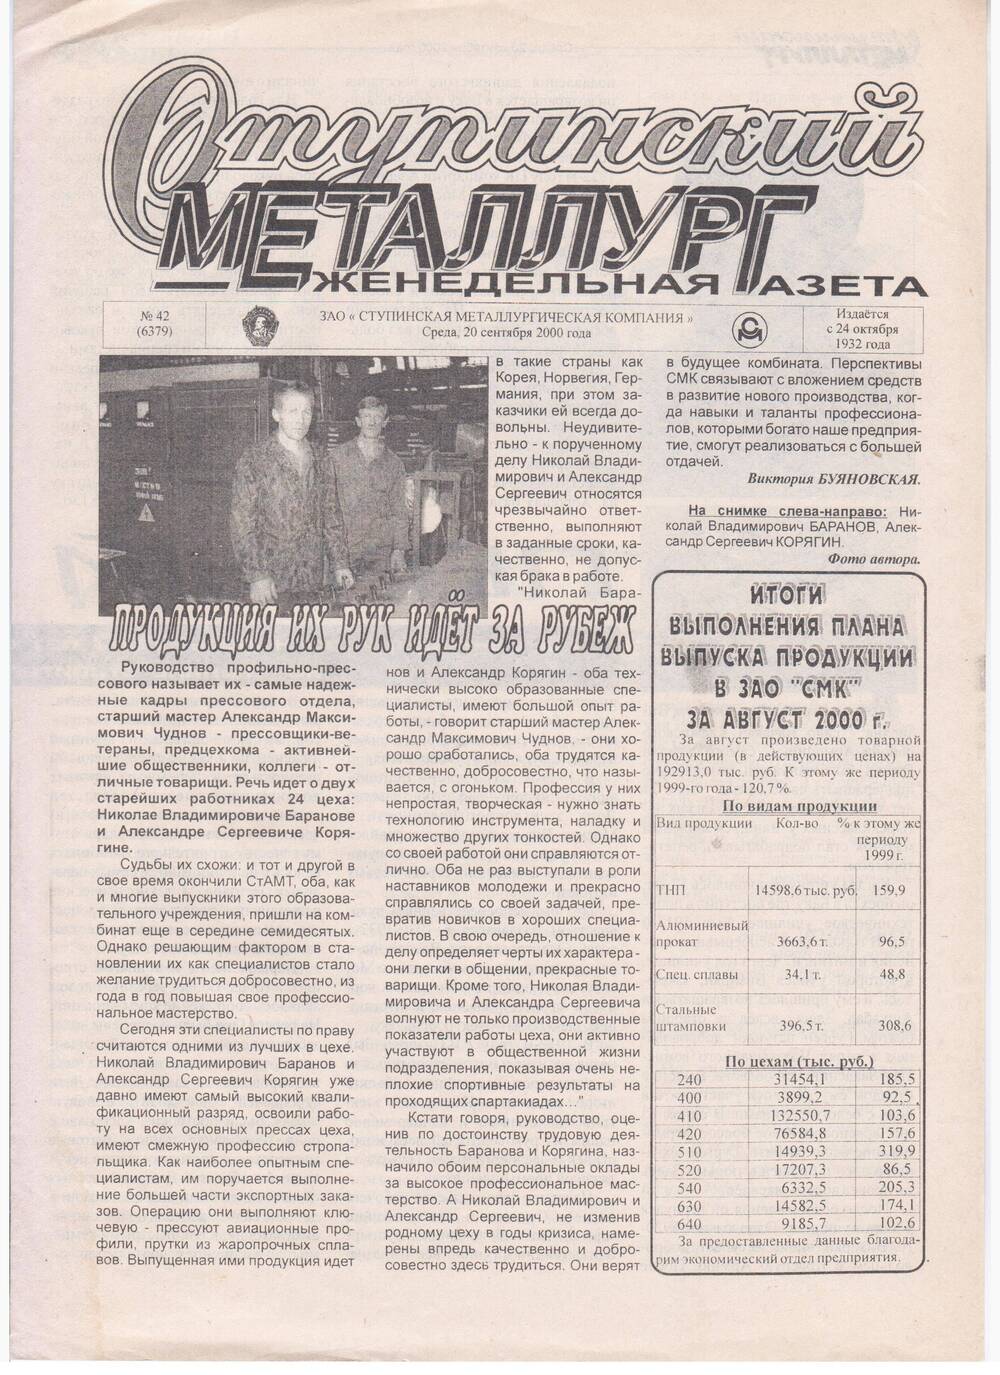 Еженедельная газета Ступинский металлург №42(6379) от 20.09.2000 г.